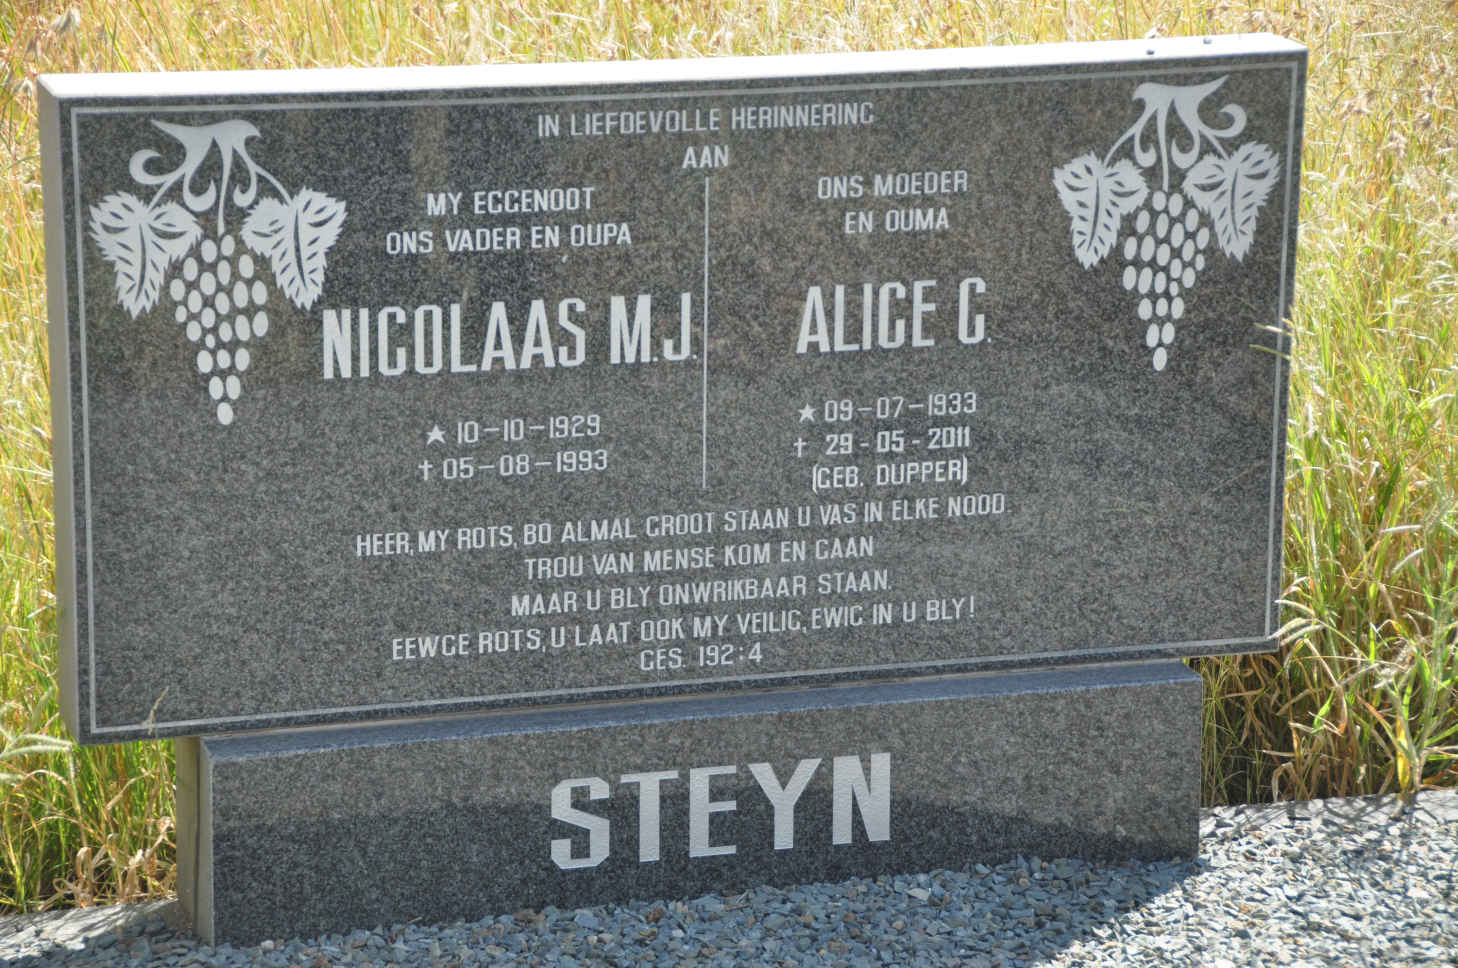 STEYN Nicolaas M.J. 1929-1993 & Alice C. DUPPER 1933-2011